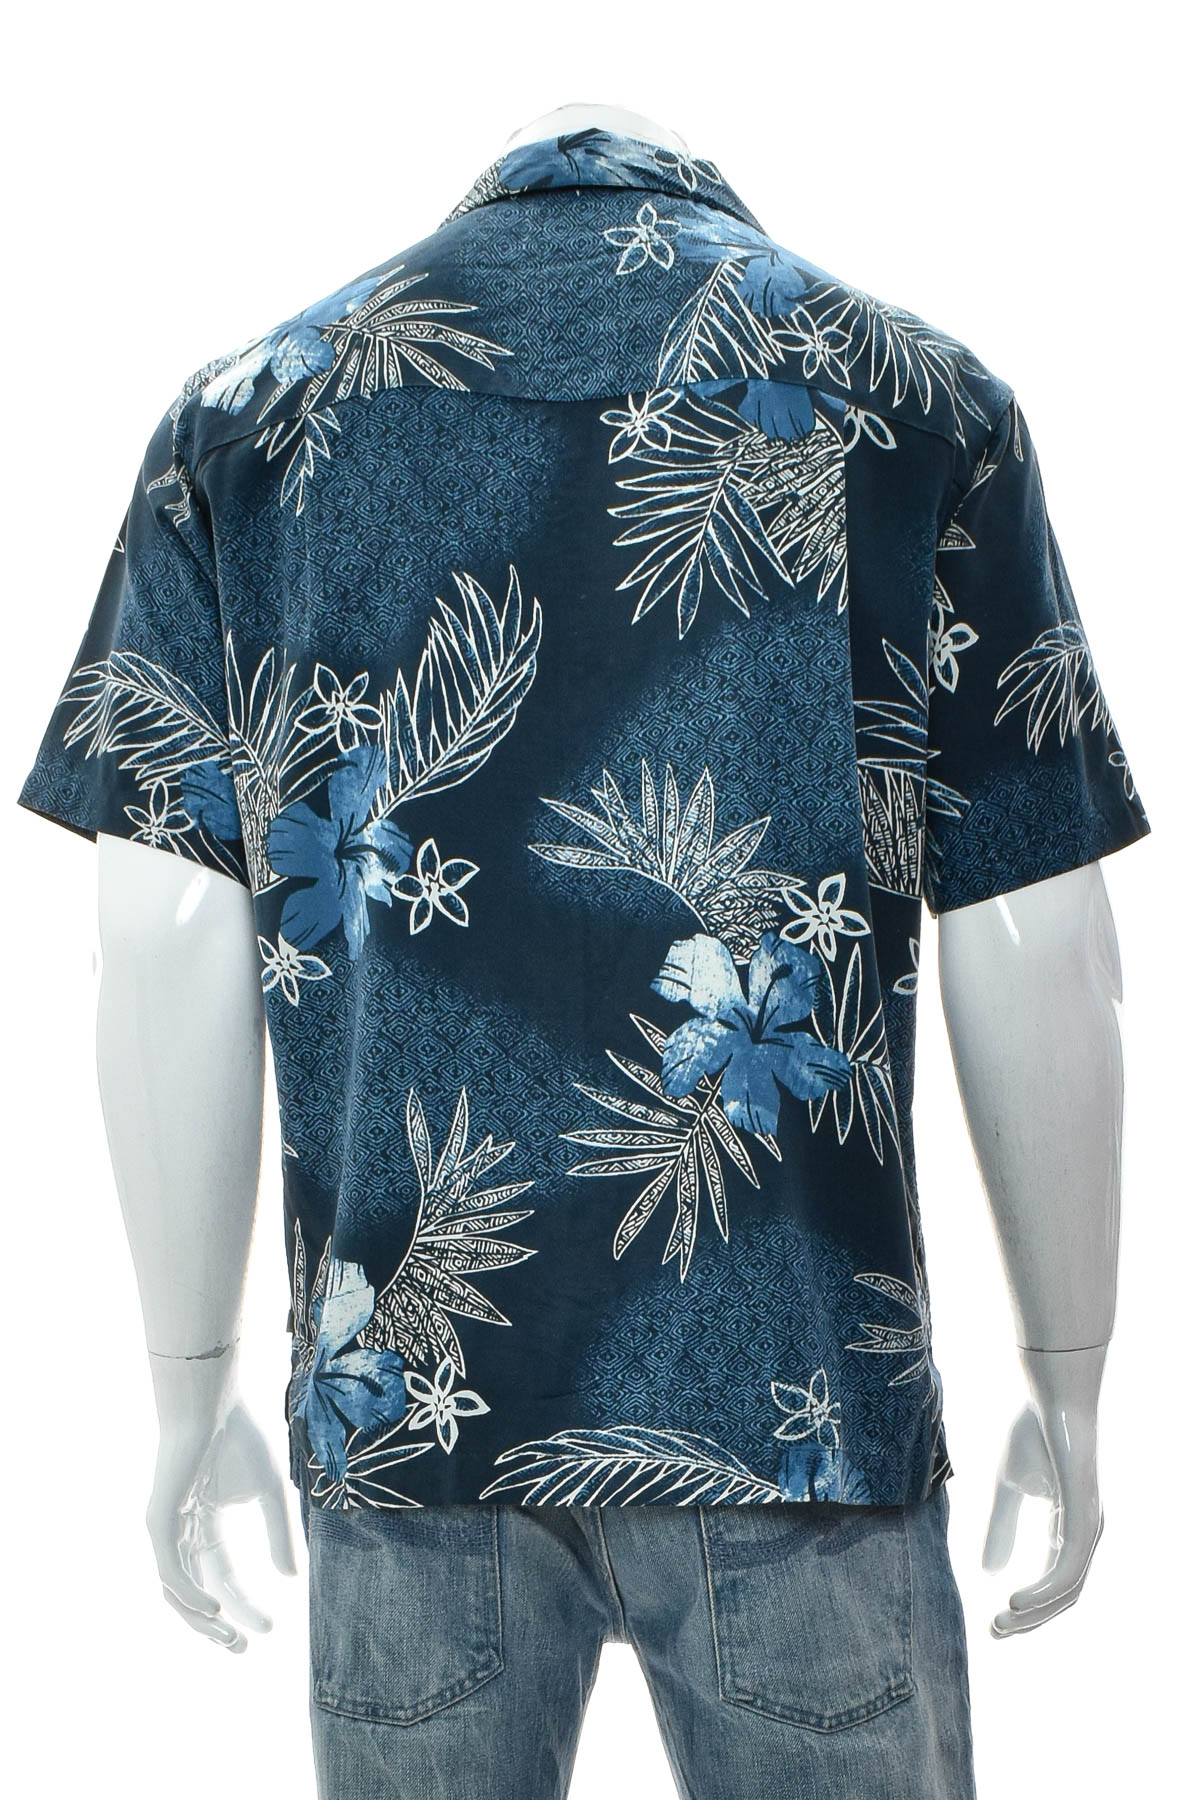 Ανδρικό πουκάμισο - Island Shores - 1